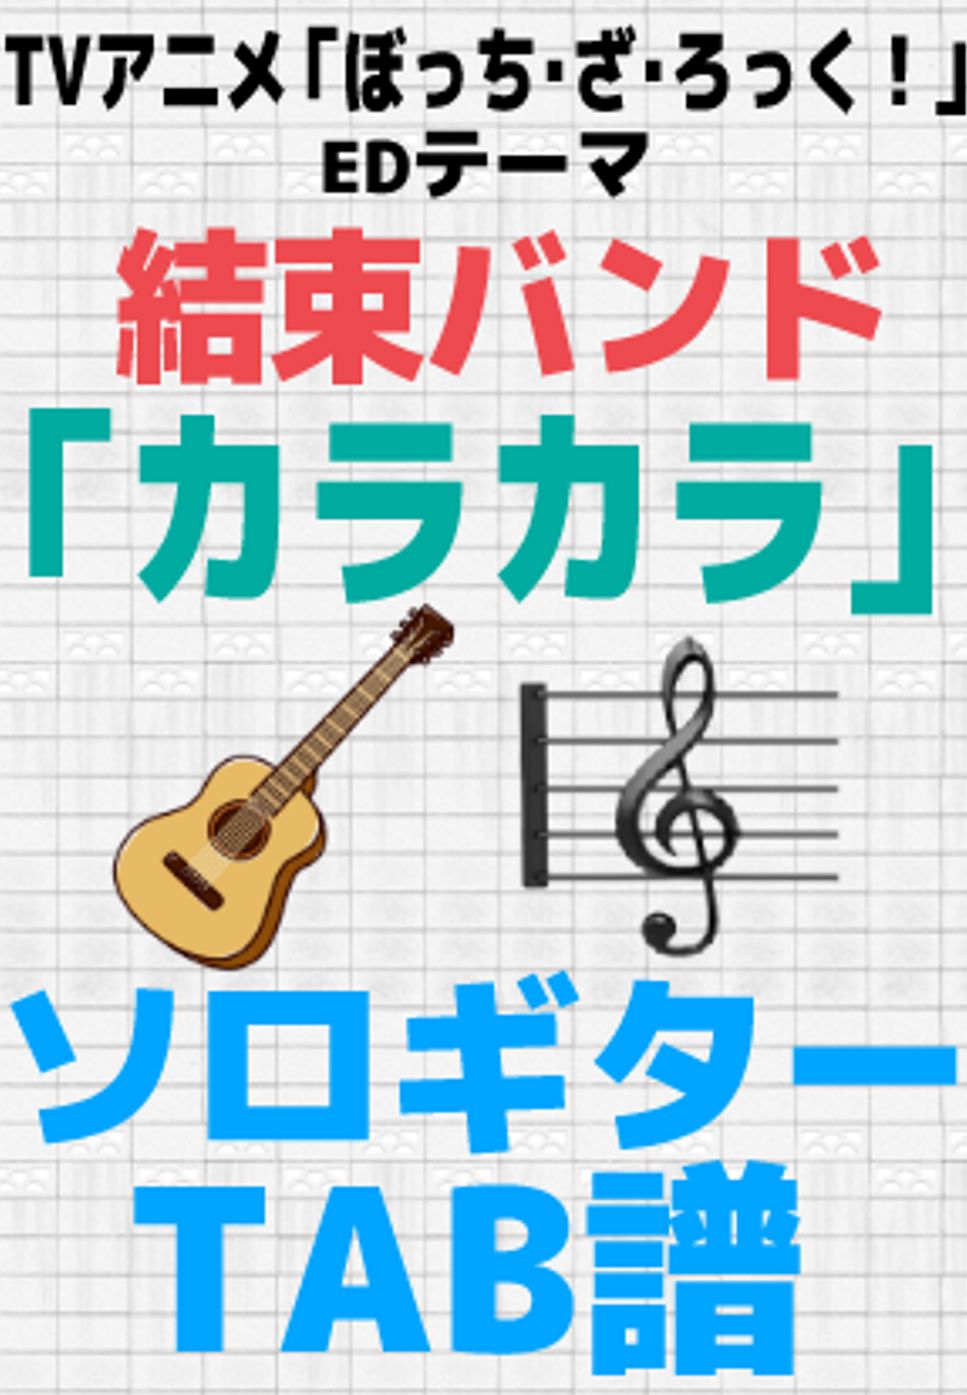 結束バンド - カラカラ【ソロギターTAB譜】 by 伊田 マナブ